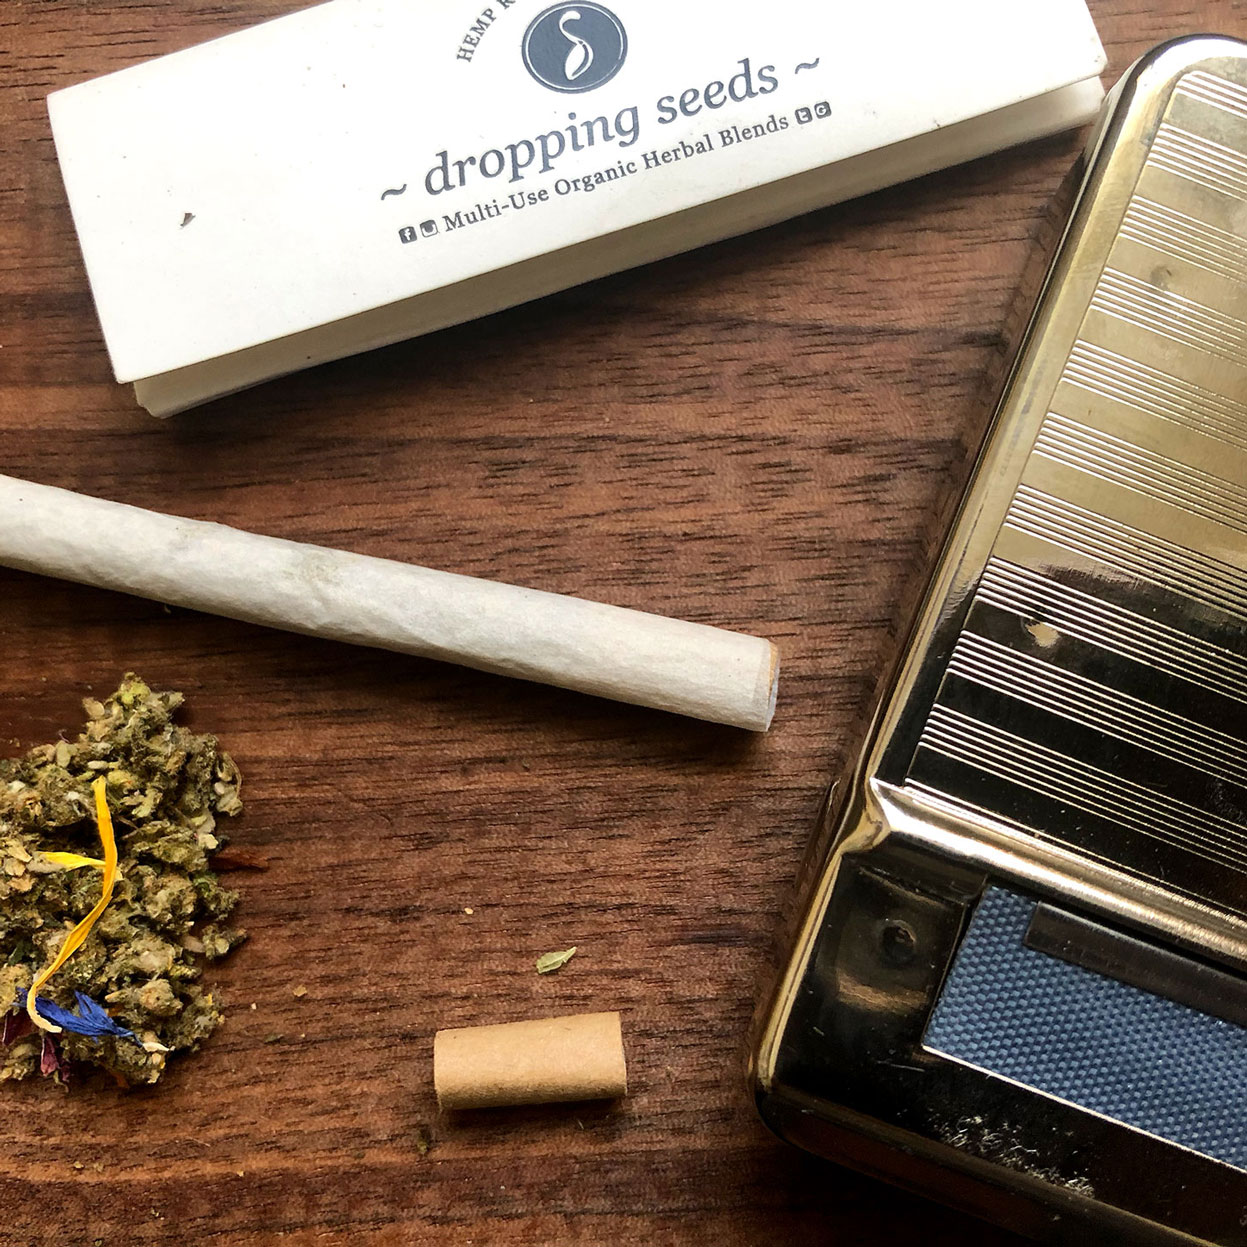 Sacred Smoke Kit with Smokable Botanical Teas